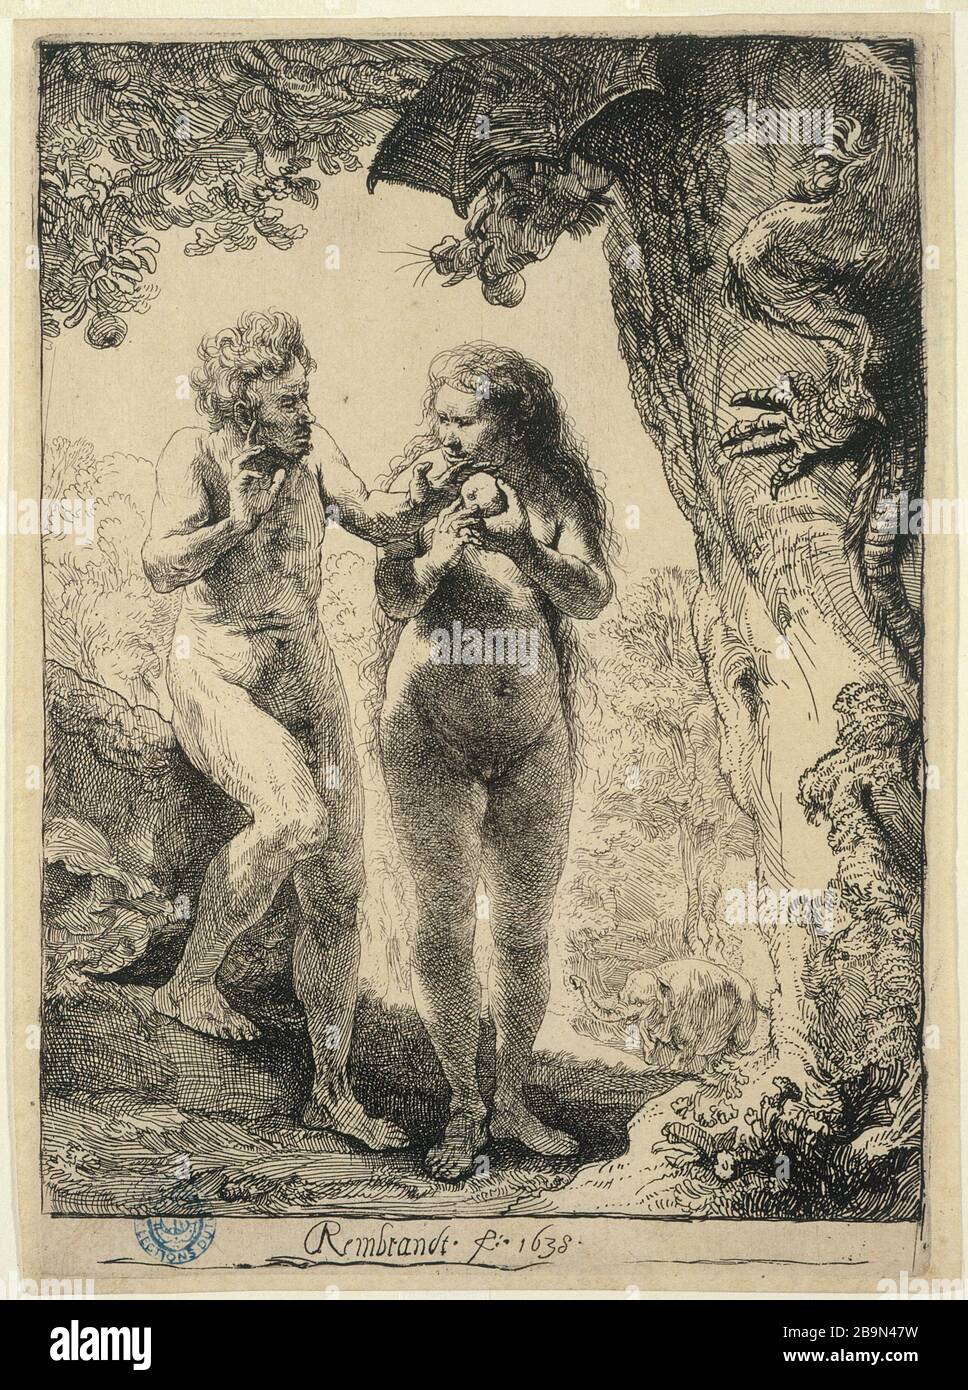 ADAM et EVE Harmensz Van Rijn Rembrandt (1606-1669). 'Harmensz Van Rijn Rembrandt'. 'Adam et Eve' (B 28 - 2ème état), 1638'. Musée des Beaux-Arts de la Ville de Paris, petit Palais. Banque D'Images